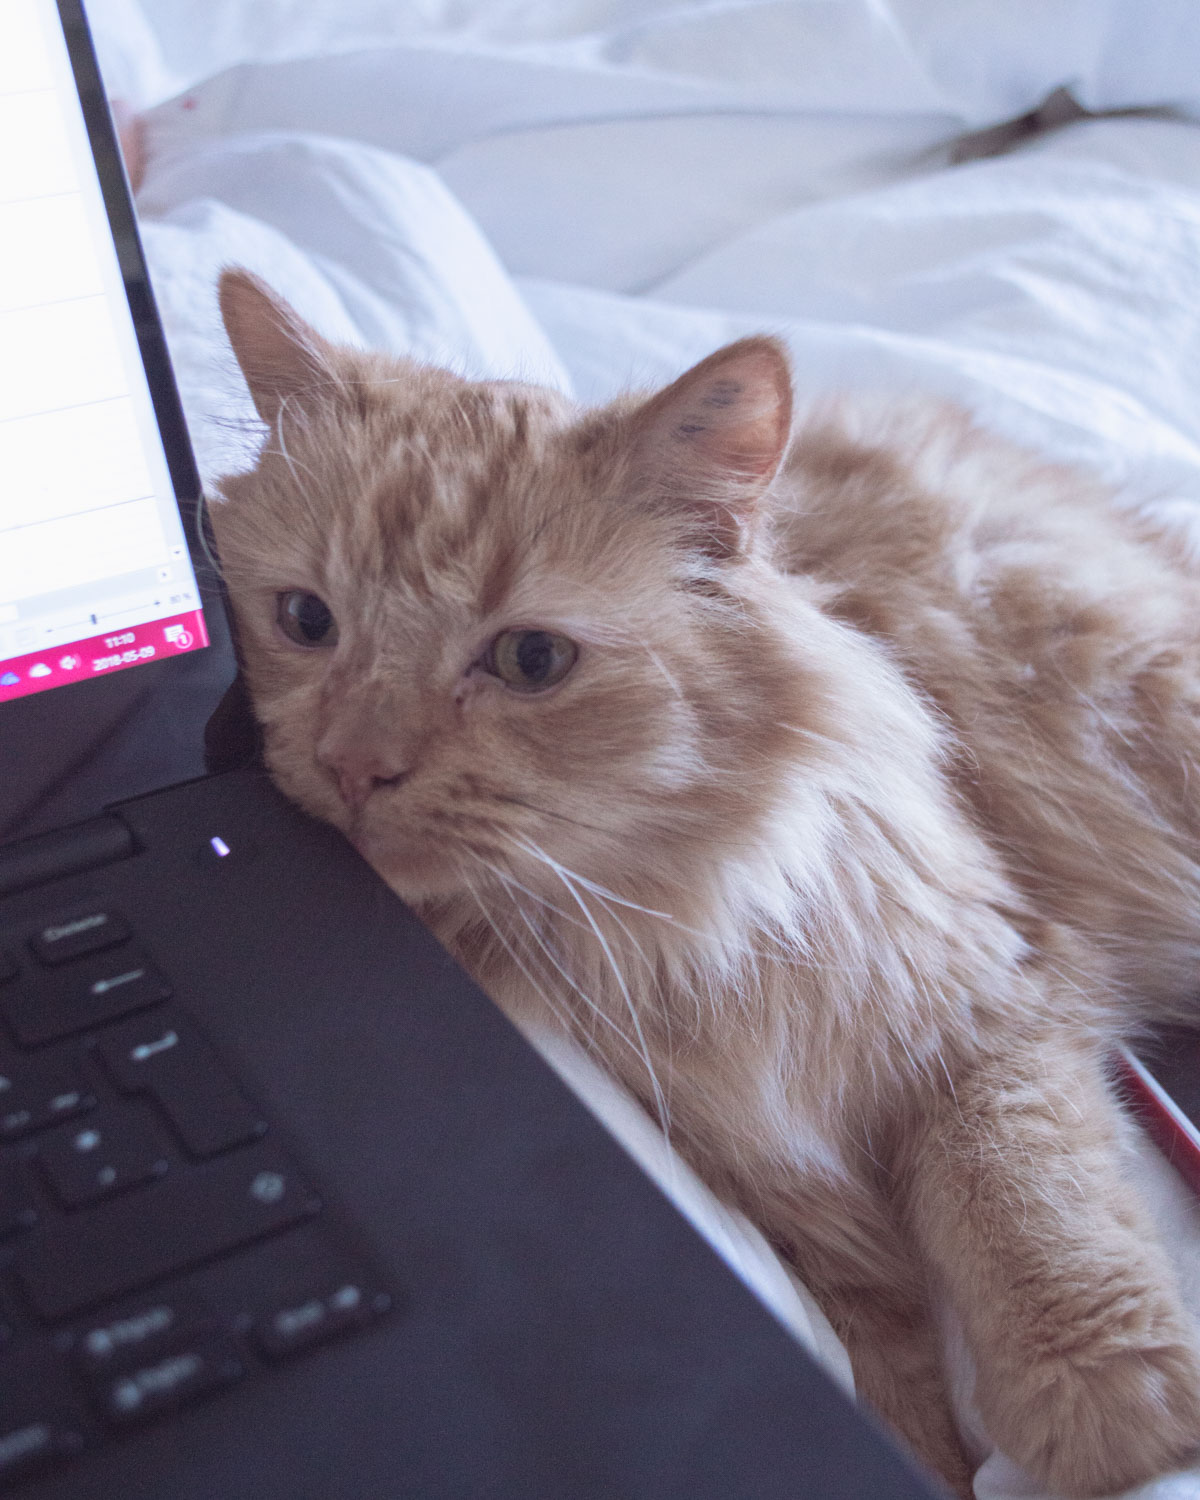 Cat sleep on laptop